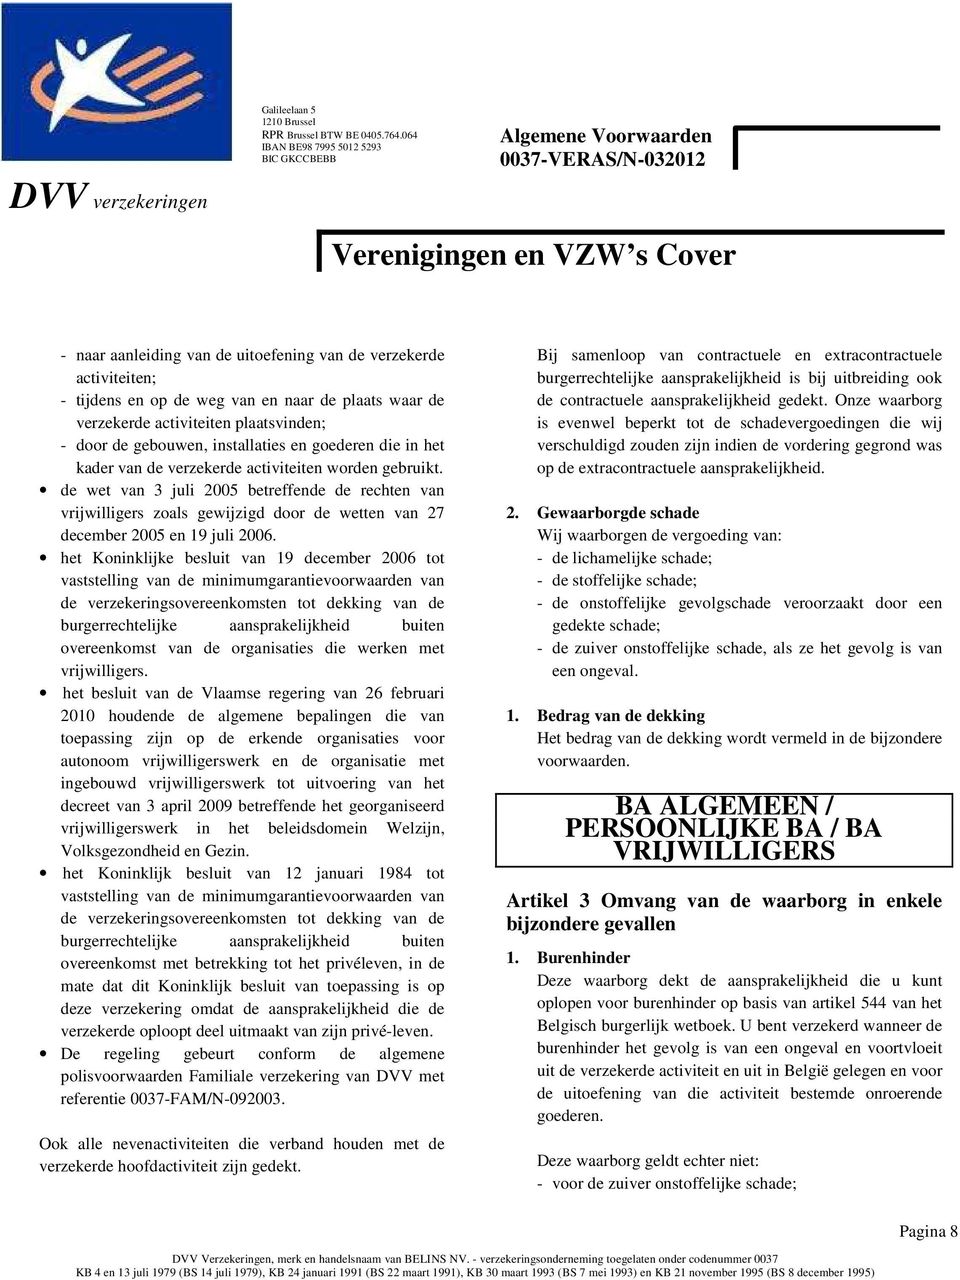 de wet van 3 juli 2005 betreffende de rechten van vrijwilligers zoals gewijzigd door de wetten van 27 december 2005 en 19 juli 2006.